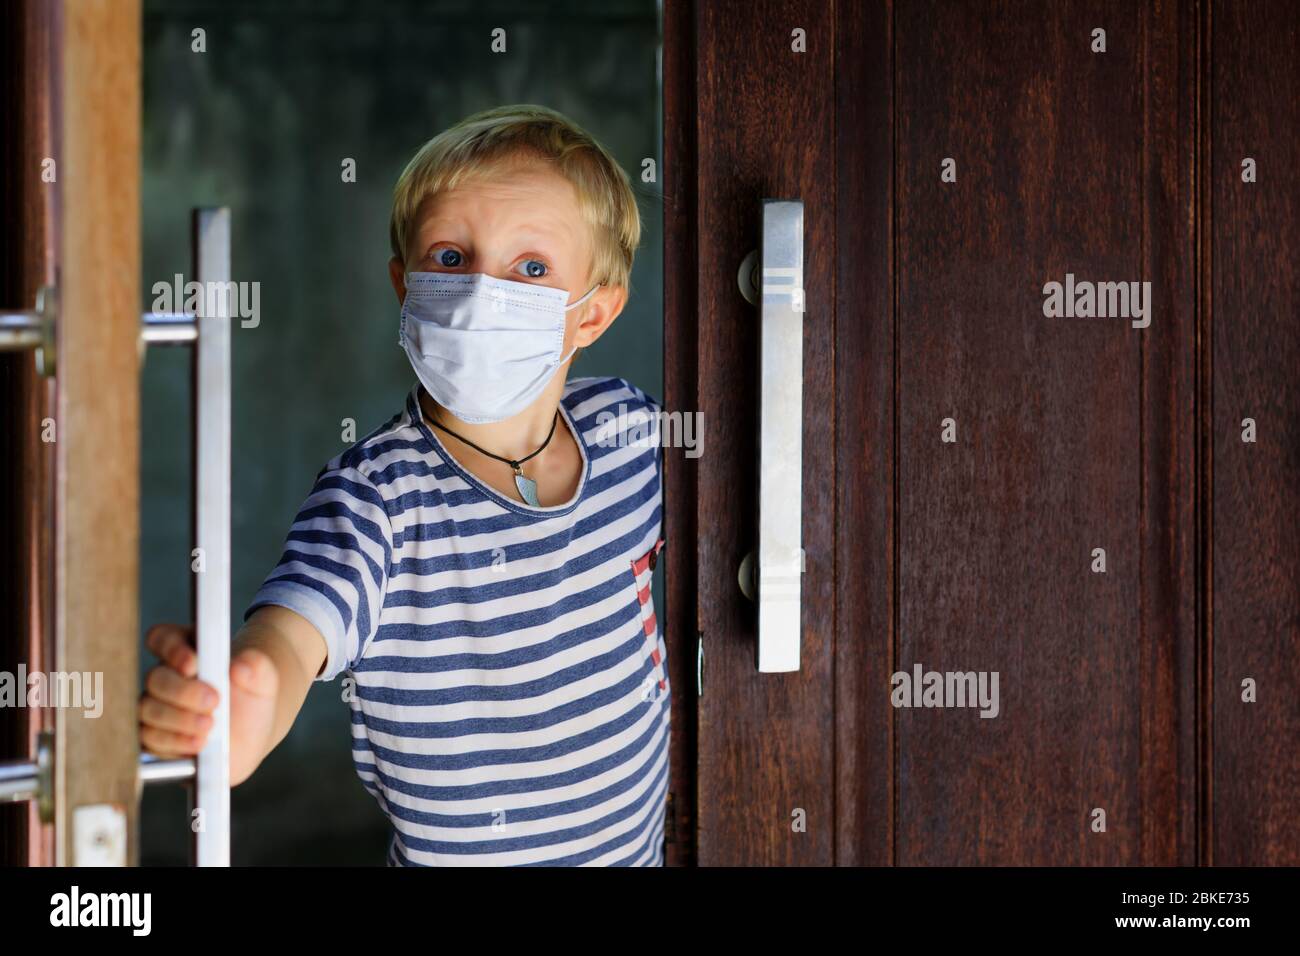 Kleines Kind, das nach dem Aufenthalt zu Hause aus der Tür aufschaute, da es auf der Straße verboten war. Kind trägt medizinische Gesichtsmasken gehen für außerhalb gehen. Stockfoto